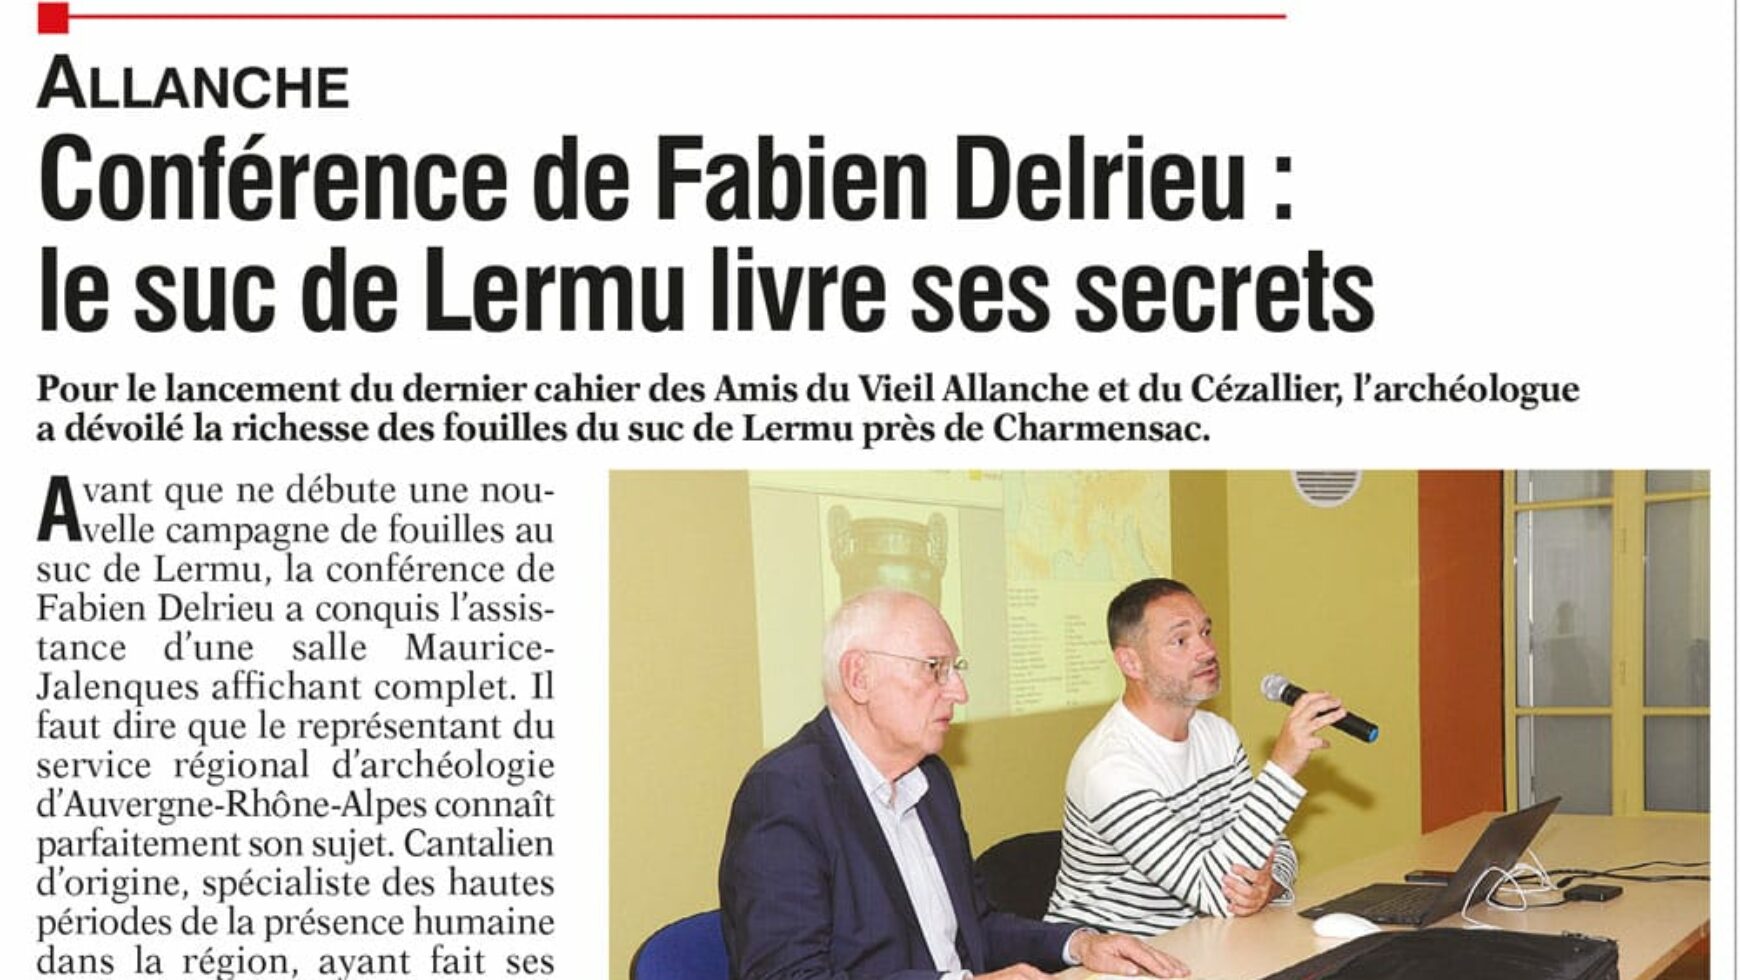 Conférence de Fabien Delrieu : le suc de Lermu livre ses secrets – L’Union du Cantal – 19 juillet 2023